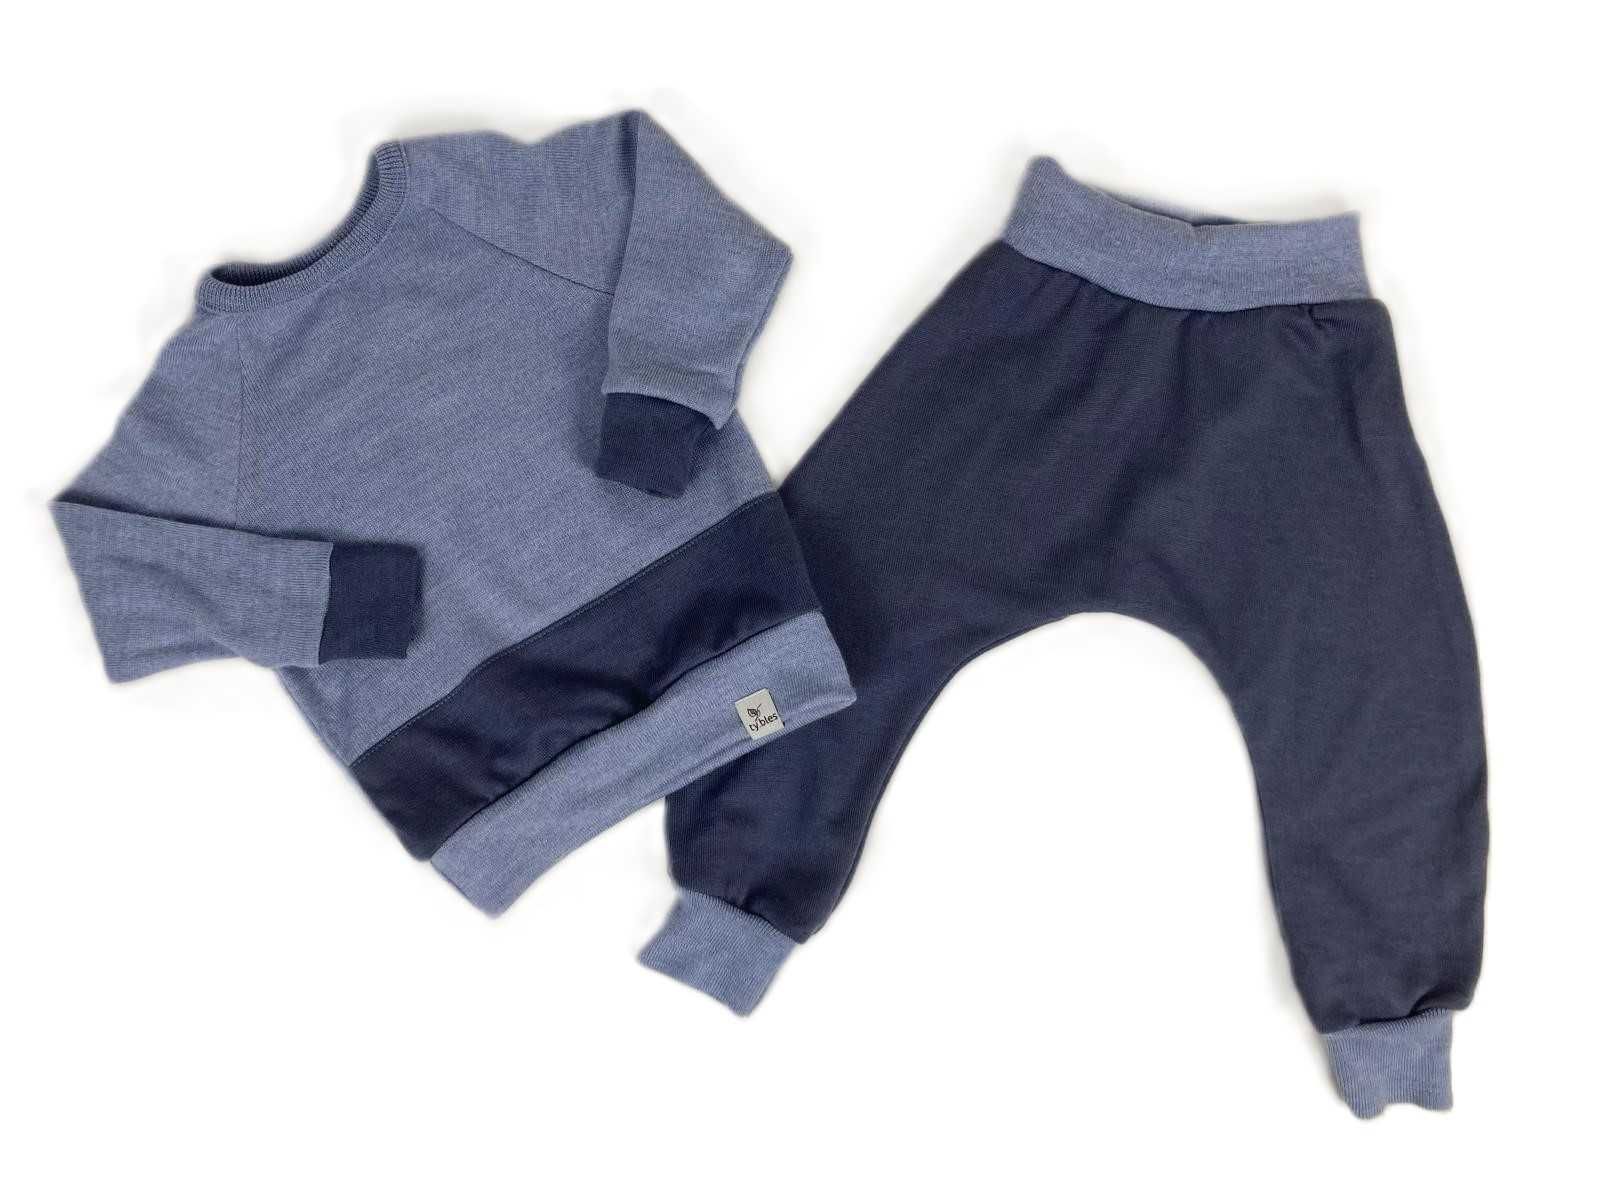 Bluza spodnie 86 cm 100% wełna baggy wool merino komplet zestaw piżama